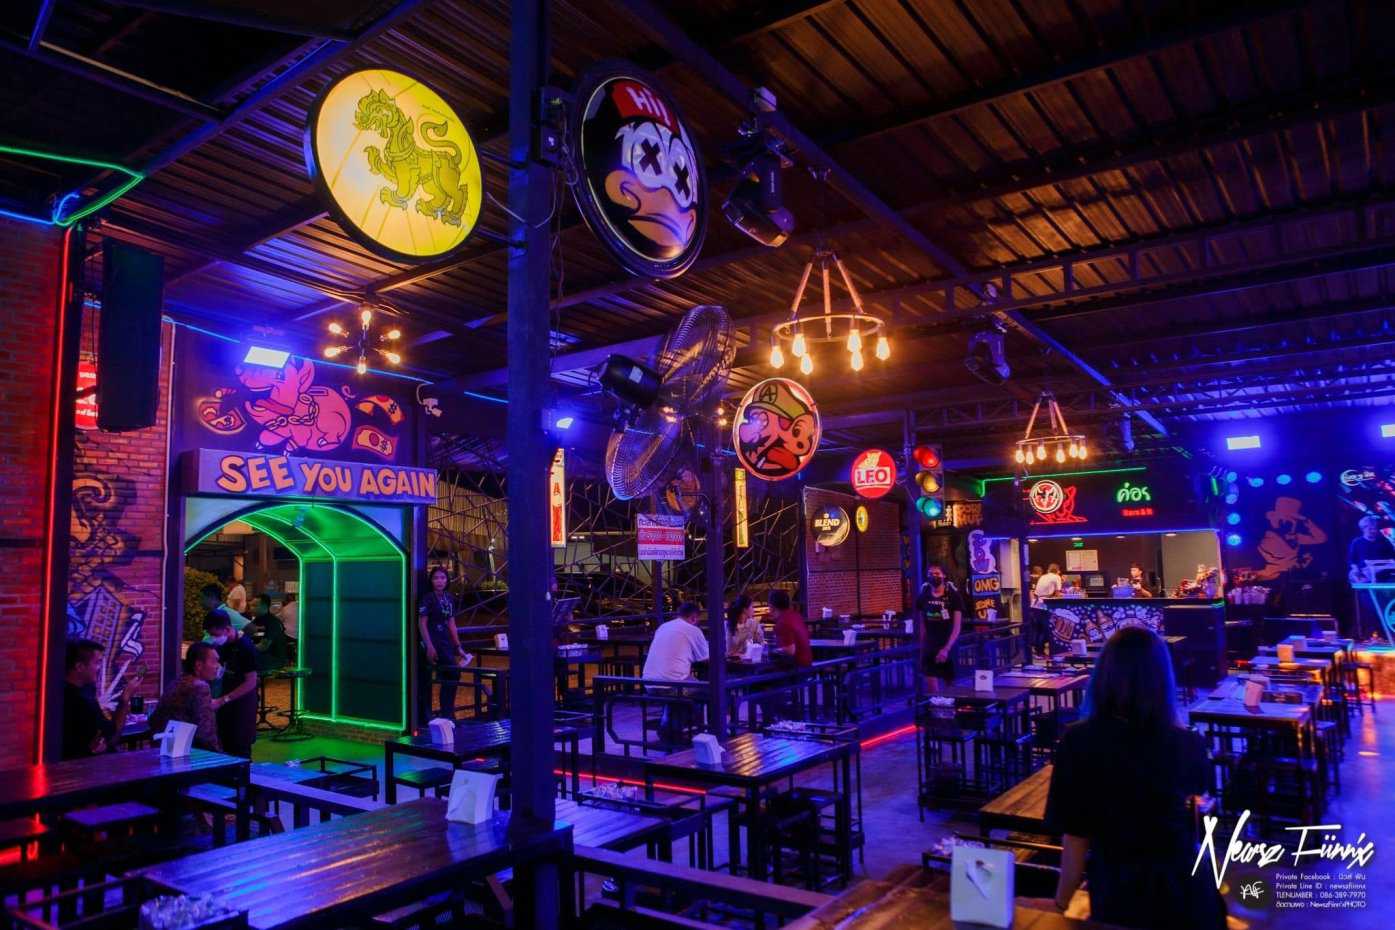 ค่อยๆจิบ Bar&restaurant : Nonthaburi